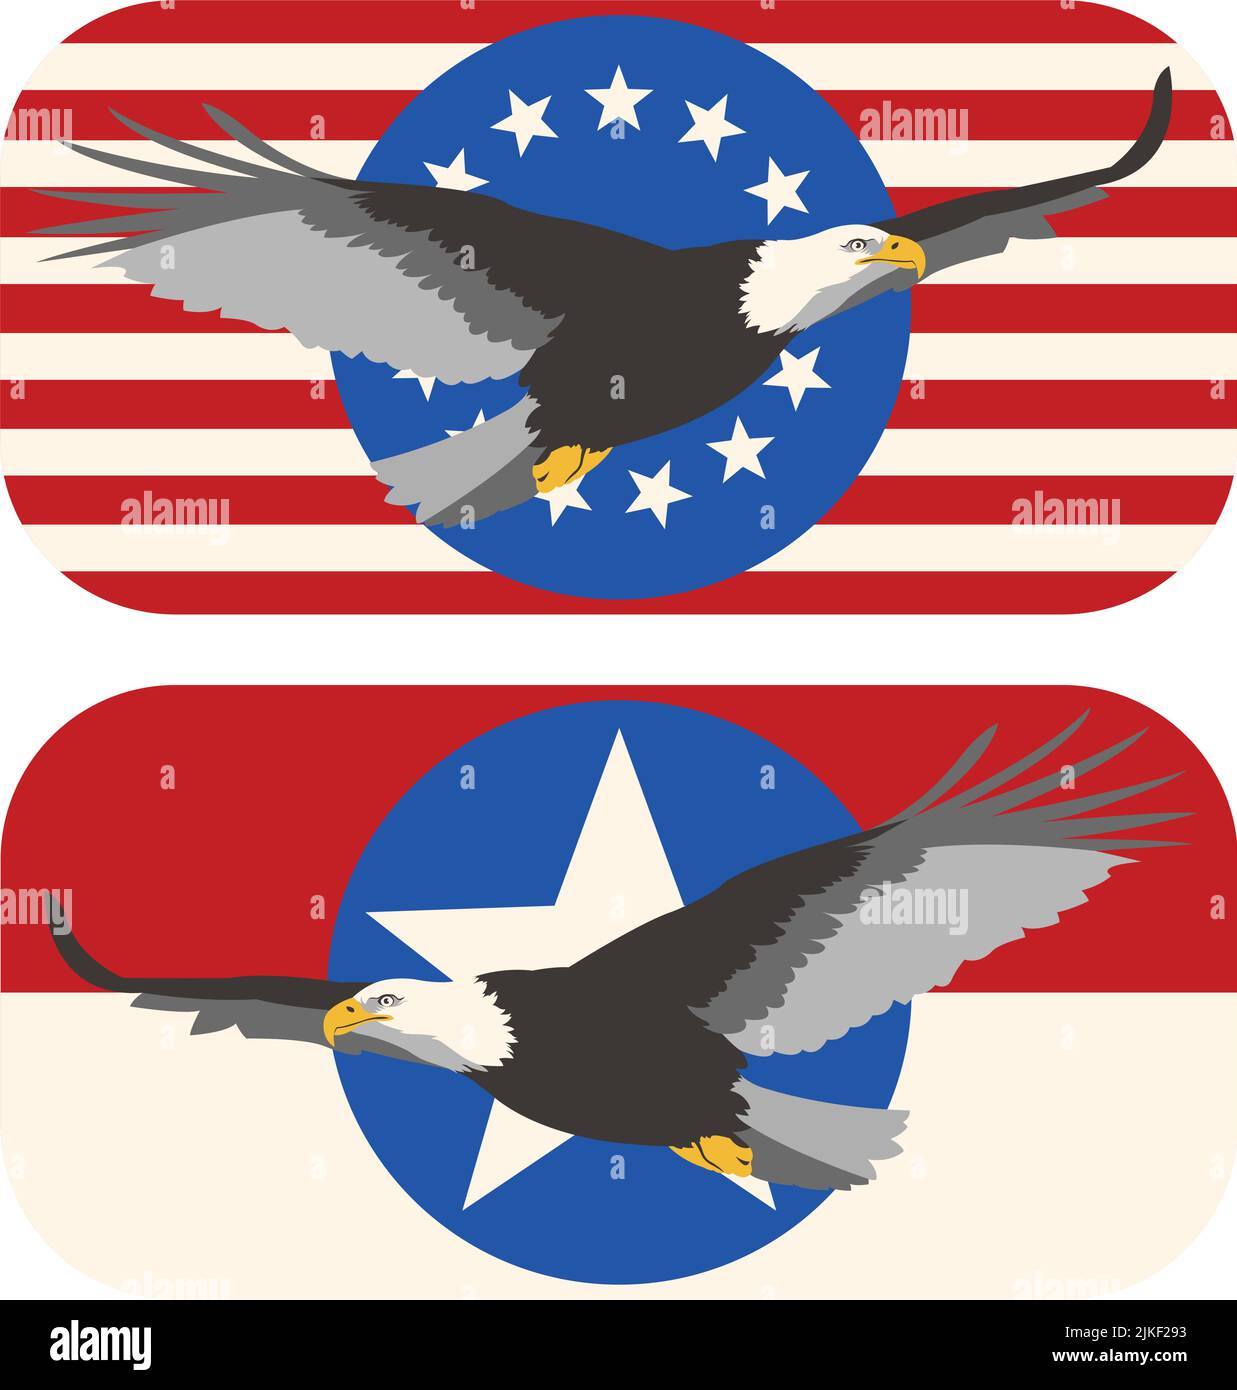 Un set di banner vettoriali illustrati con un'aquila calva americana in volo. Illustrazione Vettoriale